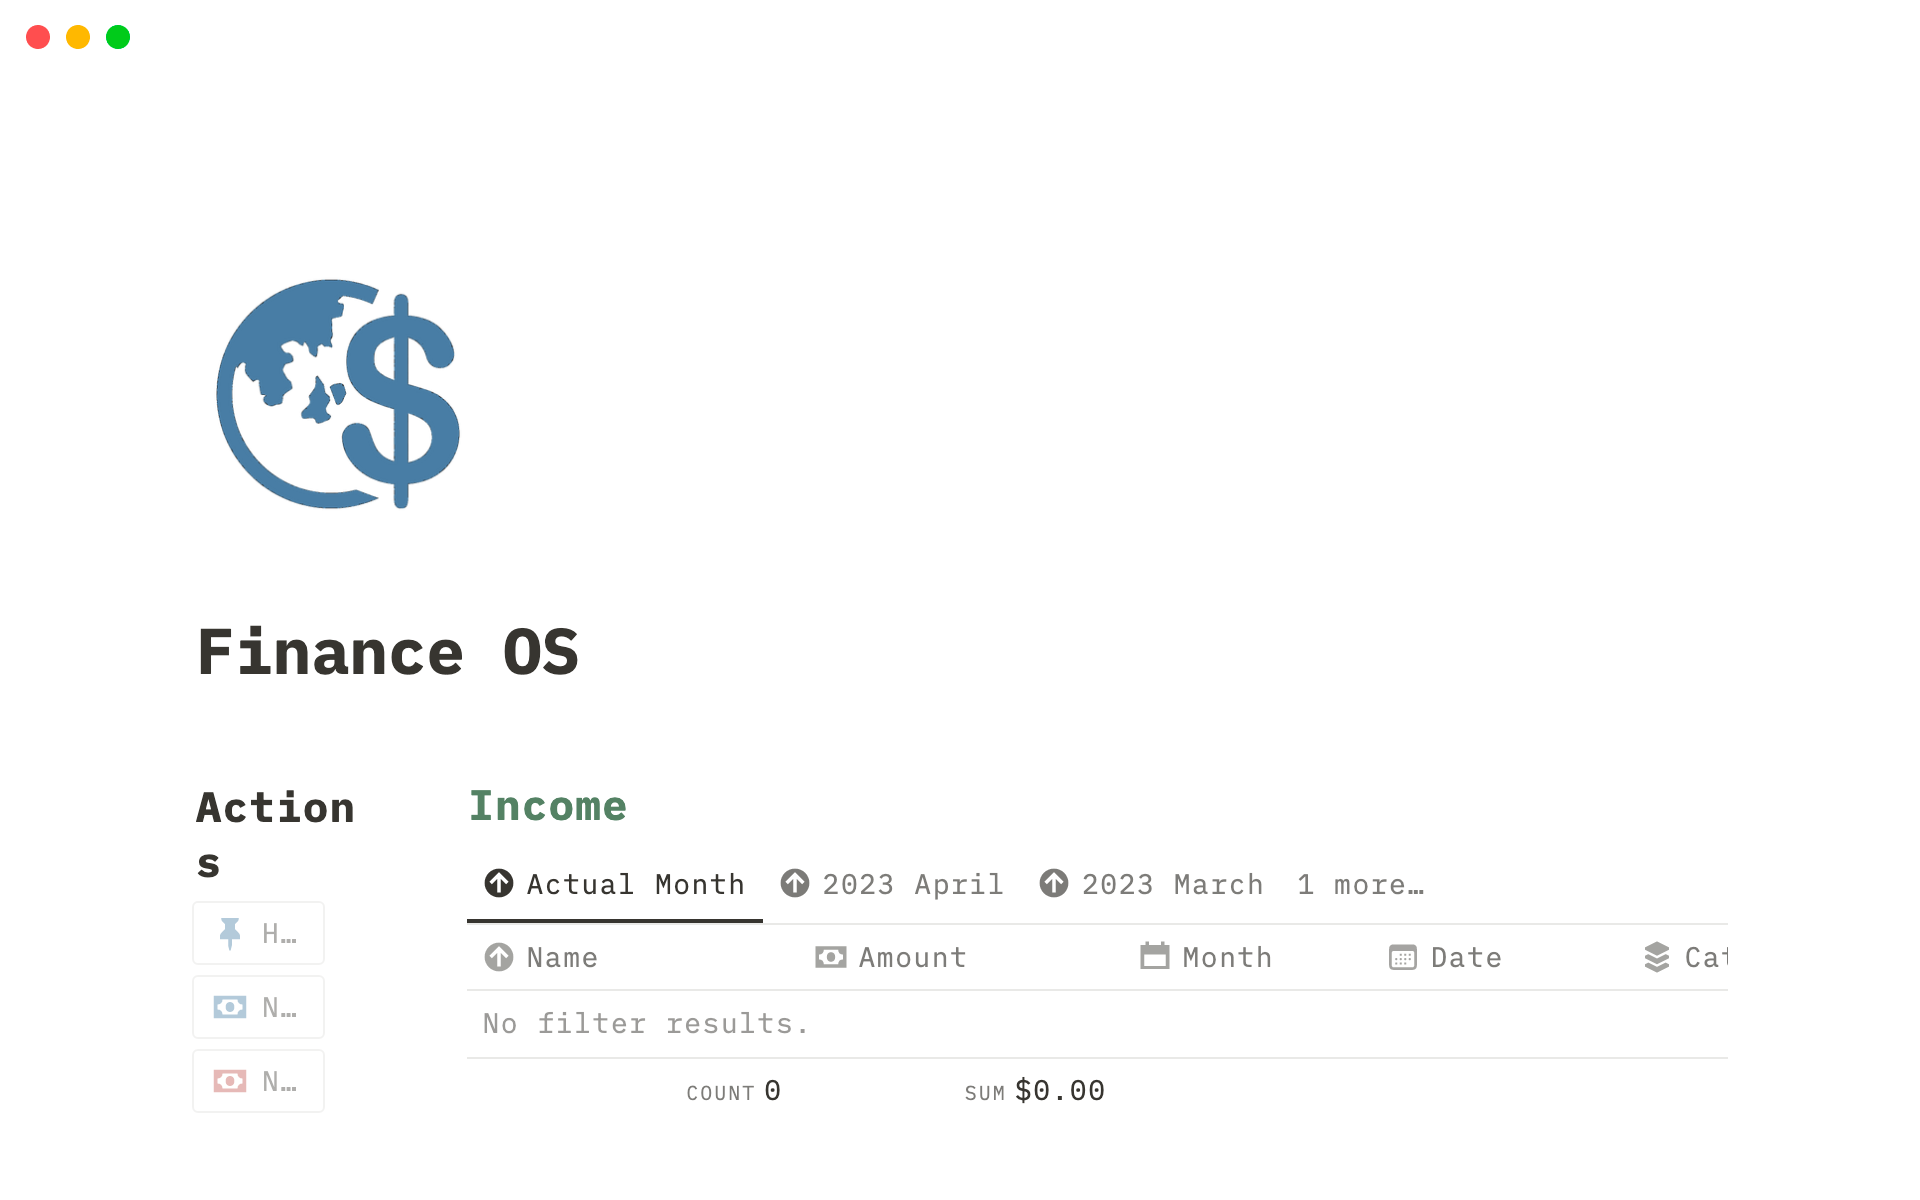 Finance OSのテンプレートのプレビュー